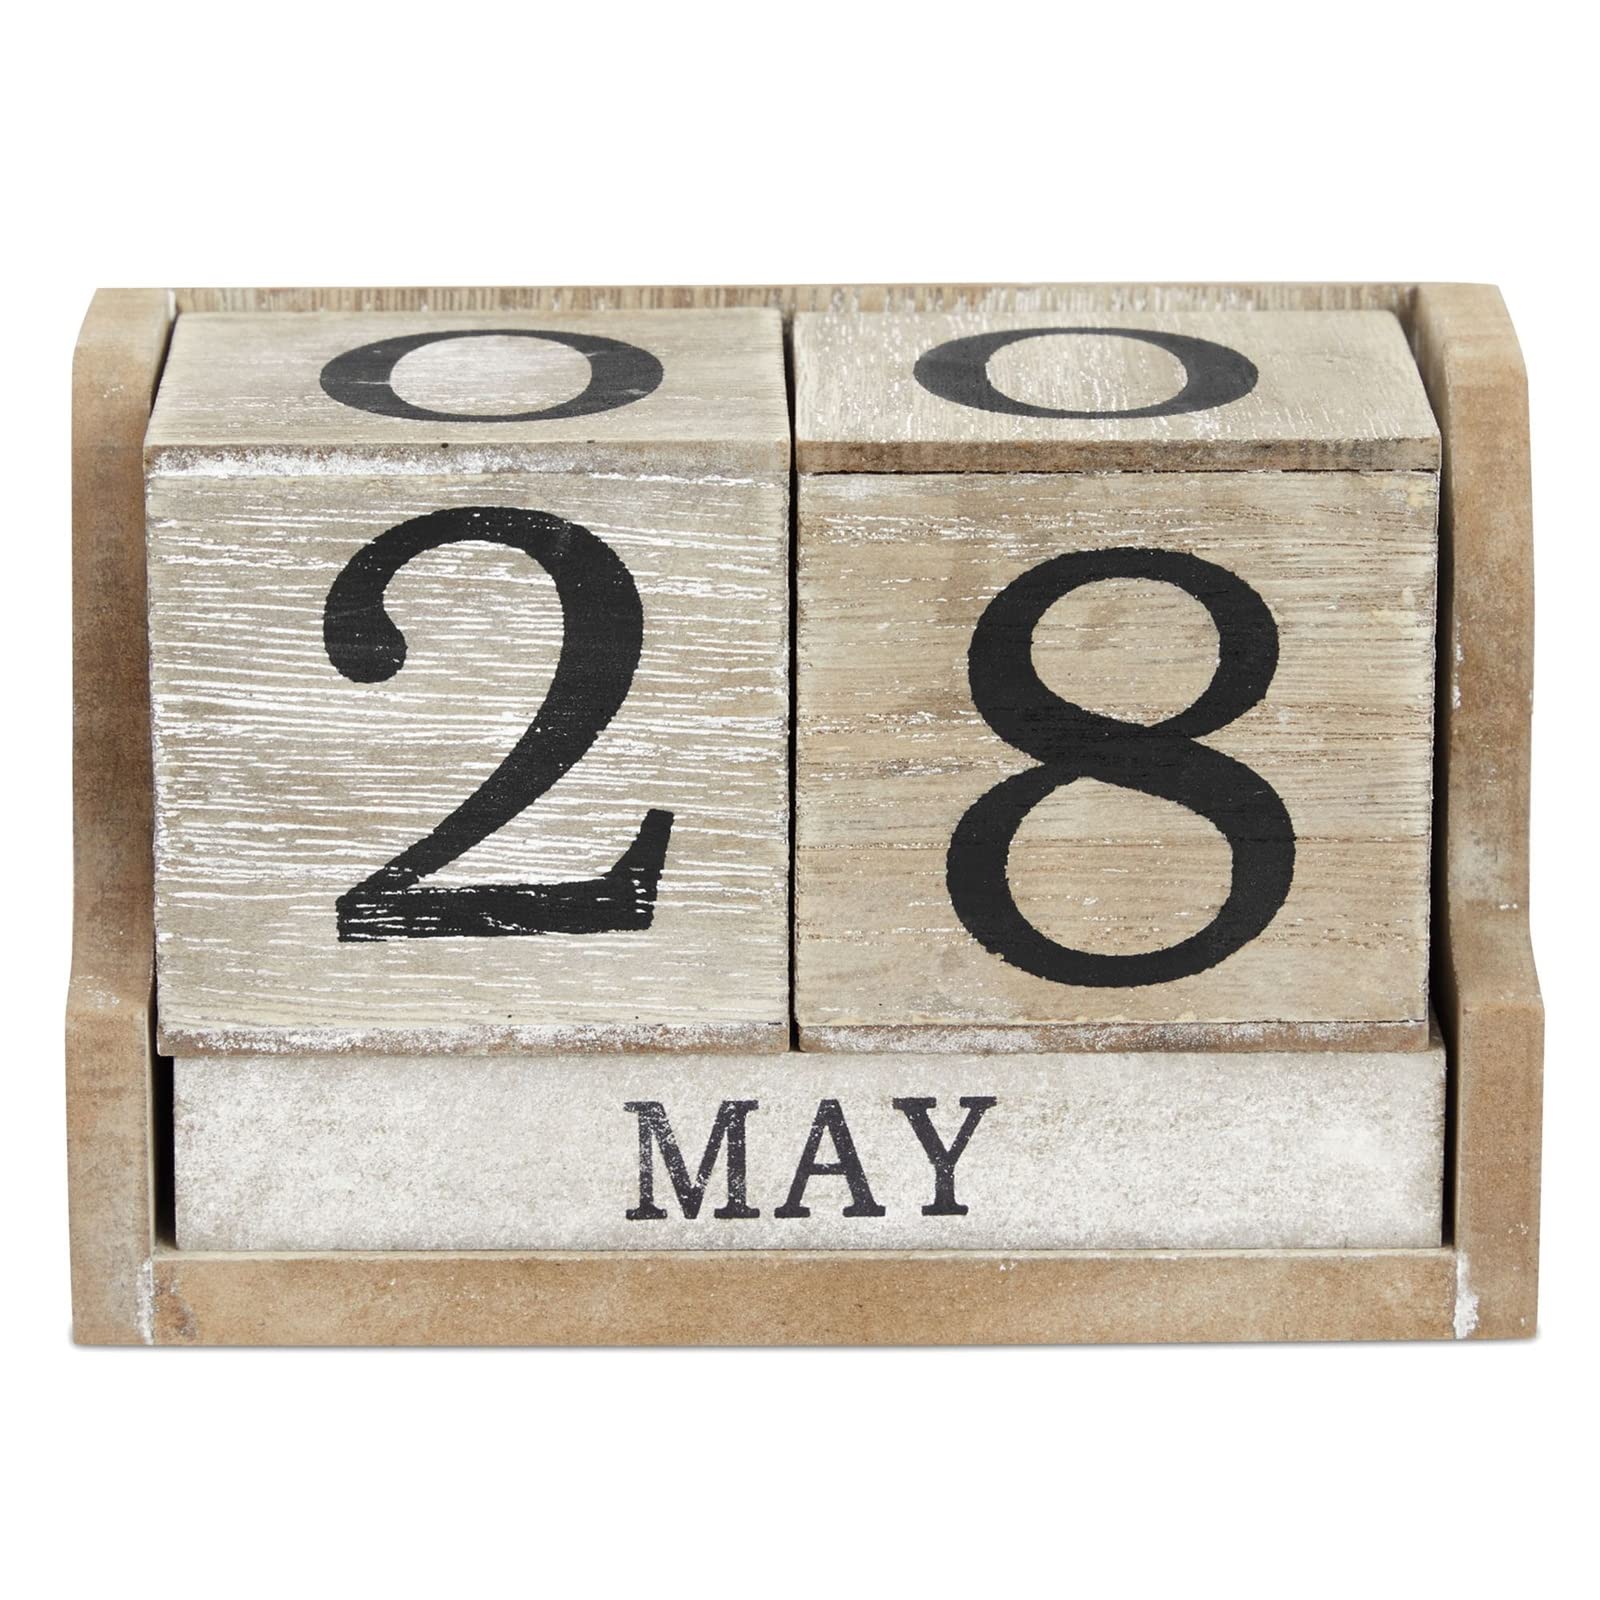 Mua Wooden Perpetual Block Calendar for Desk, Wood Month Date ...